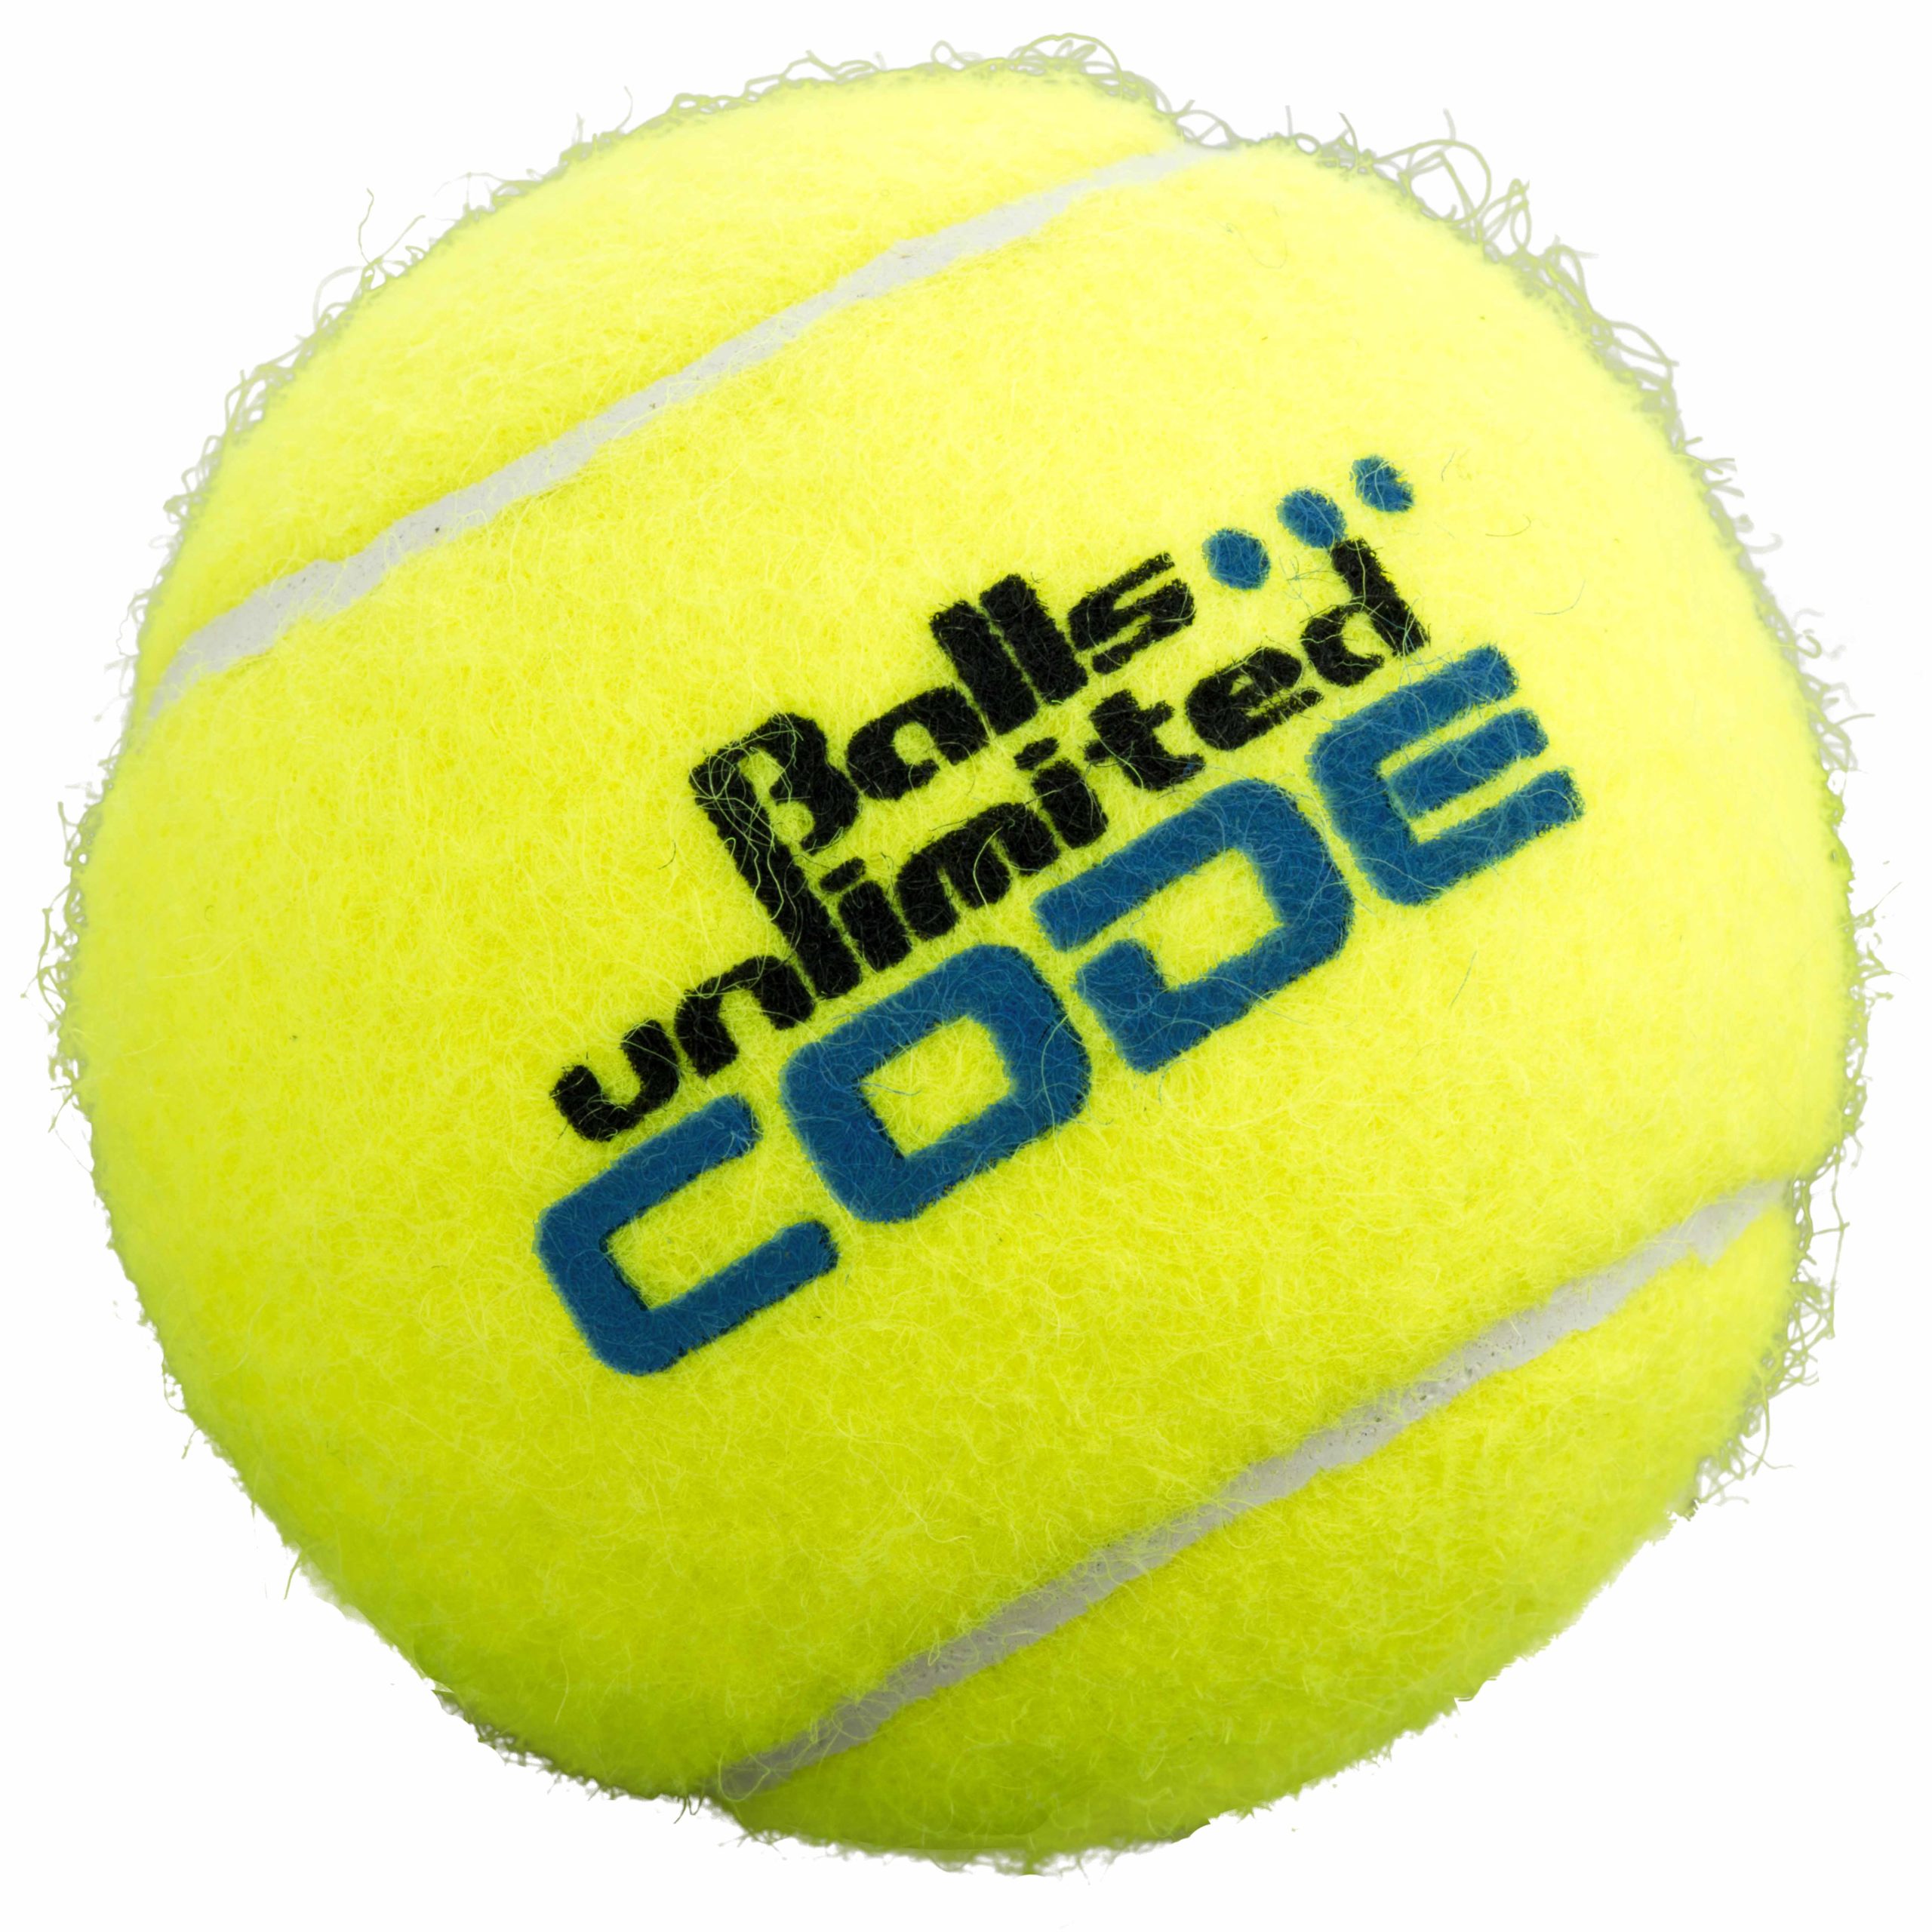 Balleimer Balls Unlimited Code Blue Gelb/Gelb-142